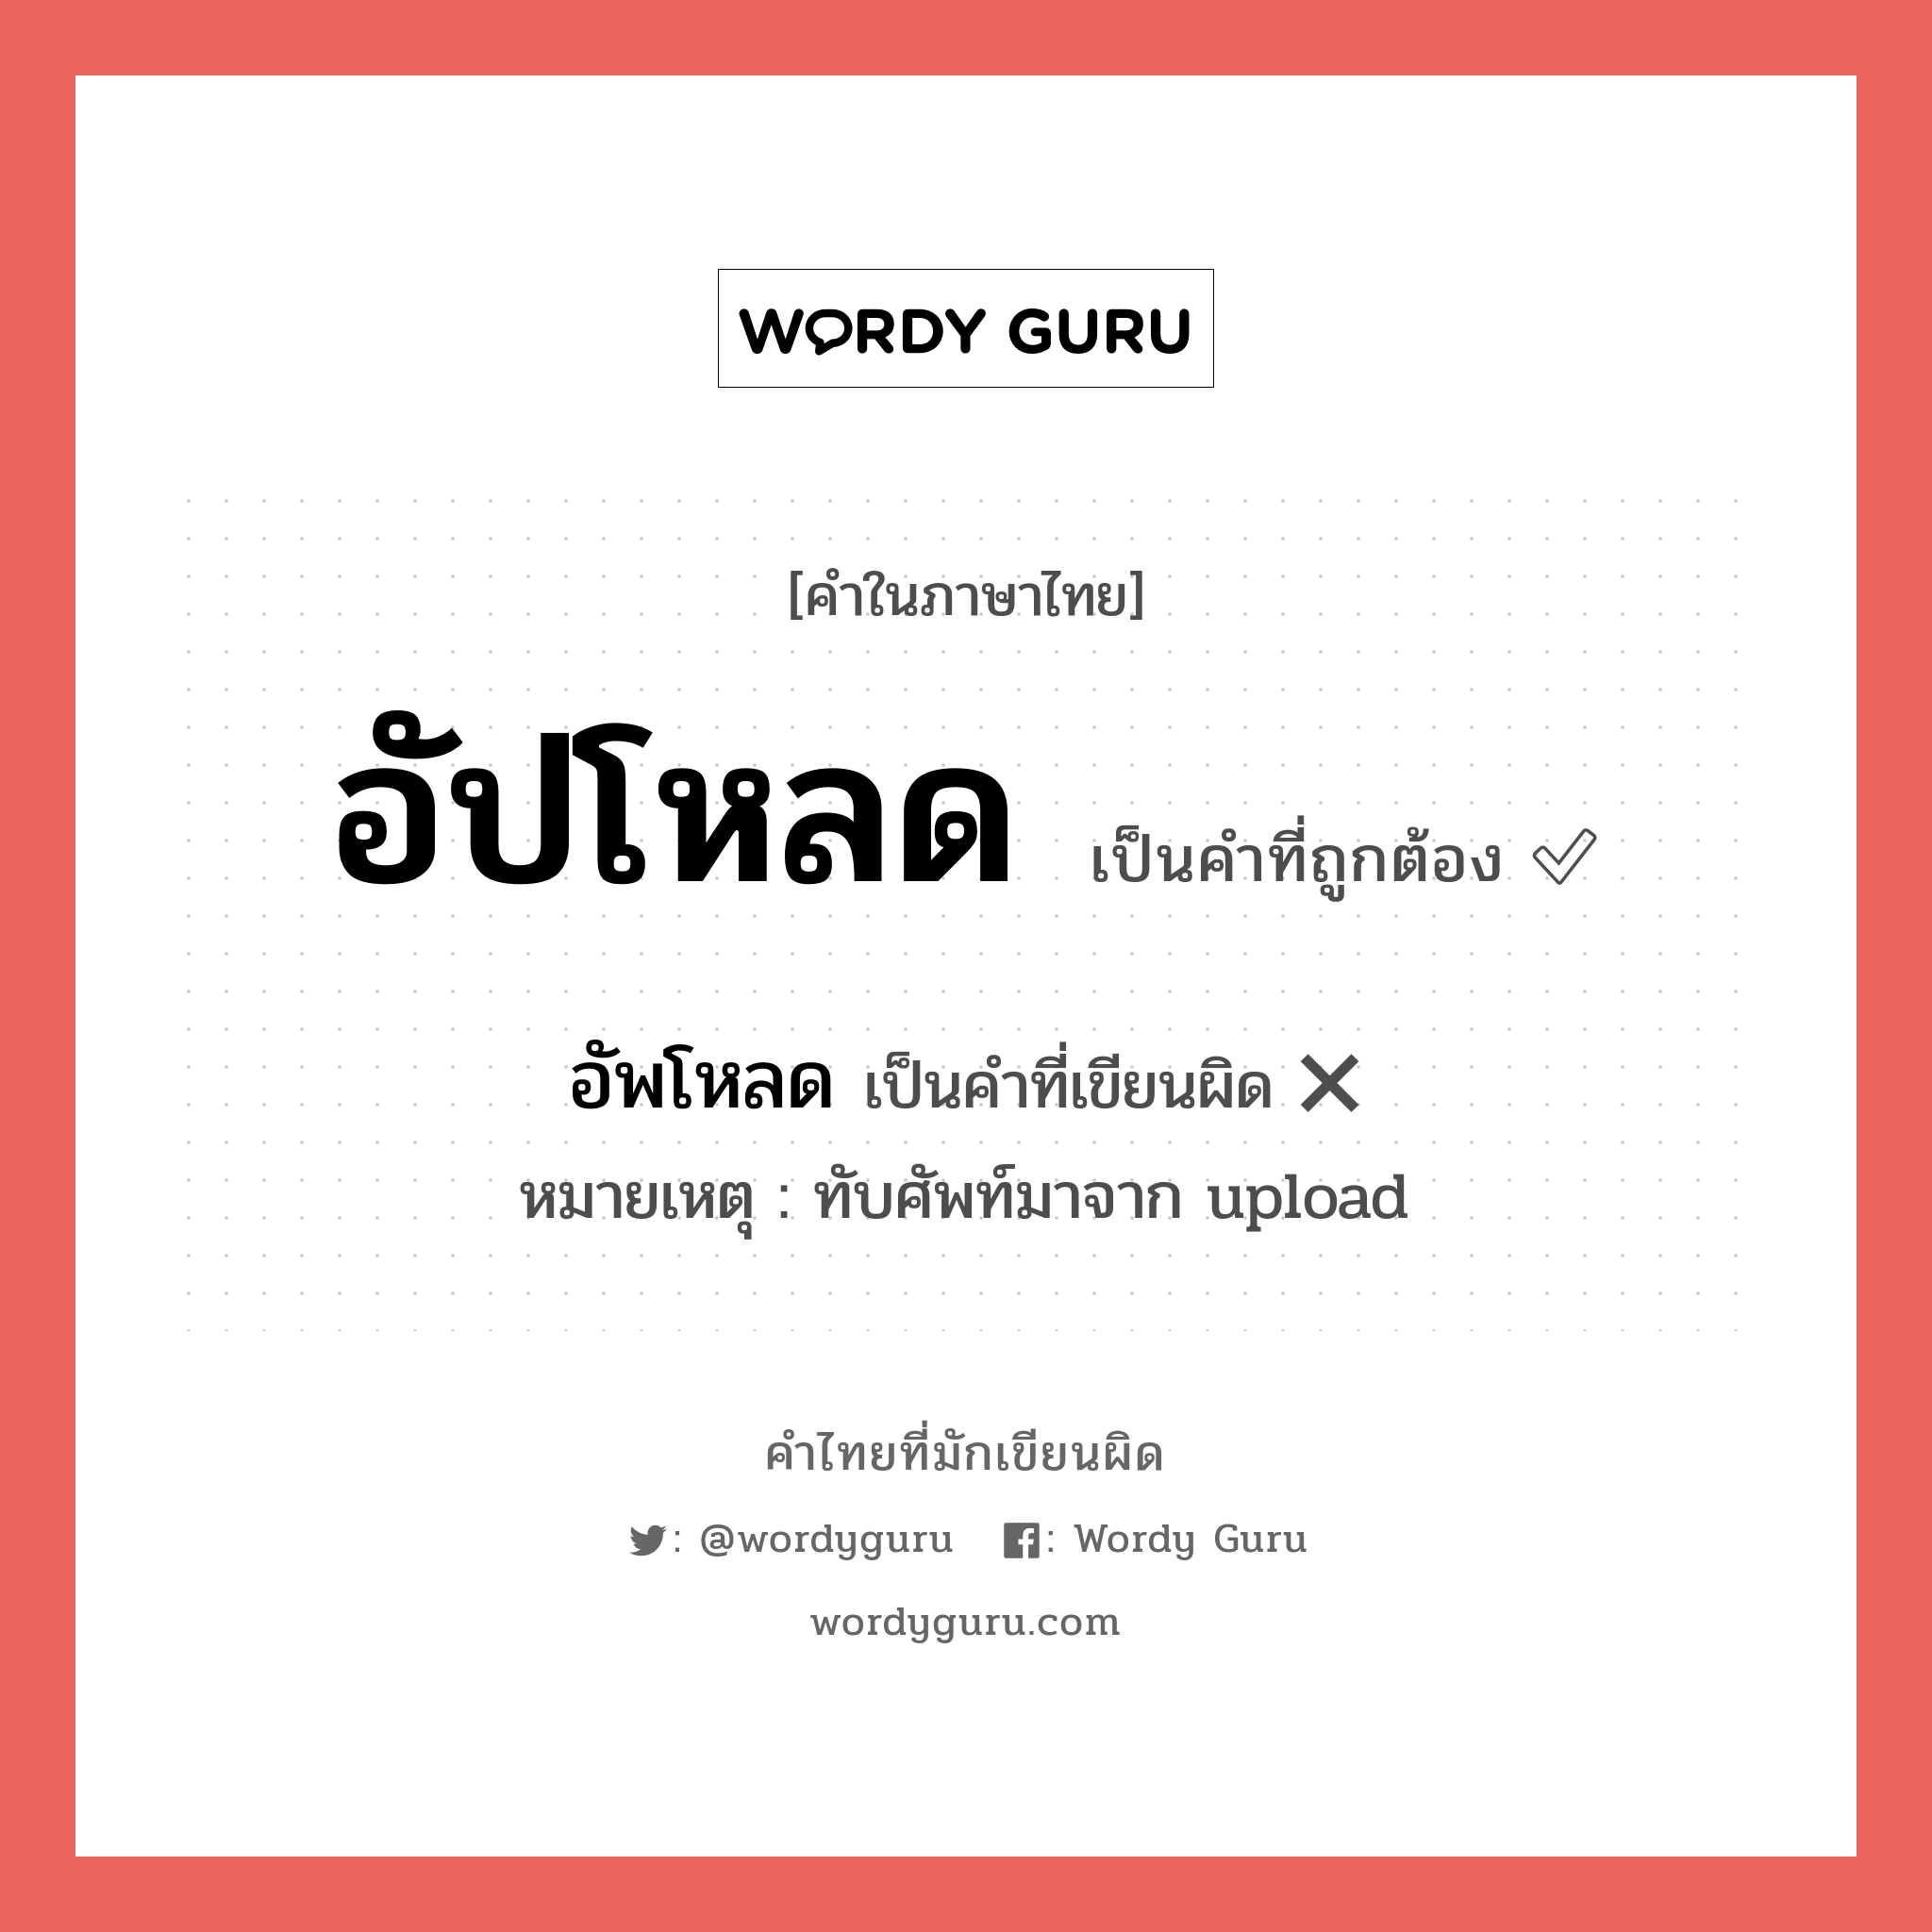 อัพโหลด หรือ อัปโหลด คำไหนเขียนถูก?, คำในภาษาไทยที่มักเขียนผิด อัพโหลด คำที่ผิด ❌ อัปโหลด หมายเหตุ ทับศัพท์มาจาก upload